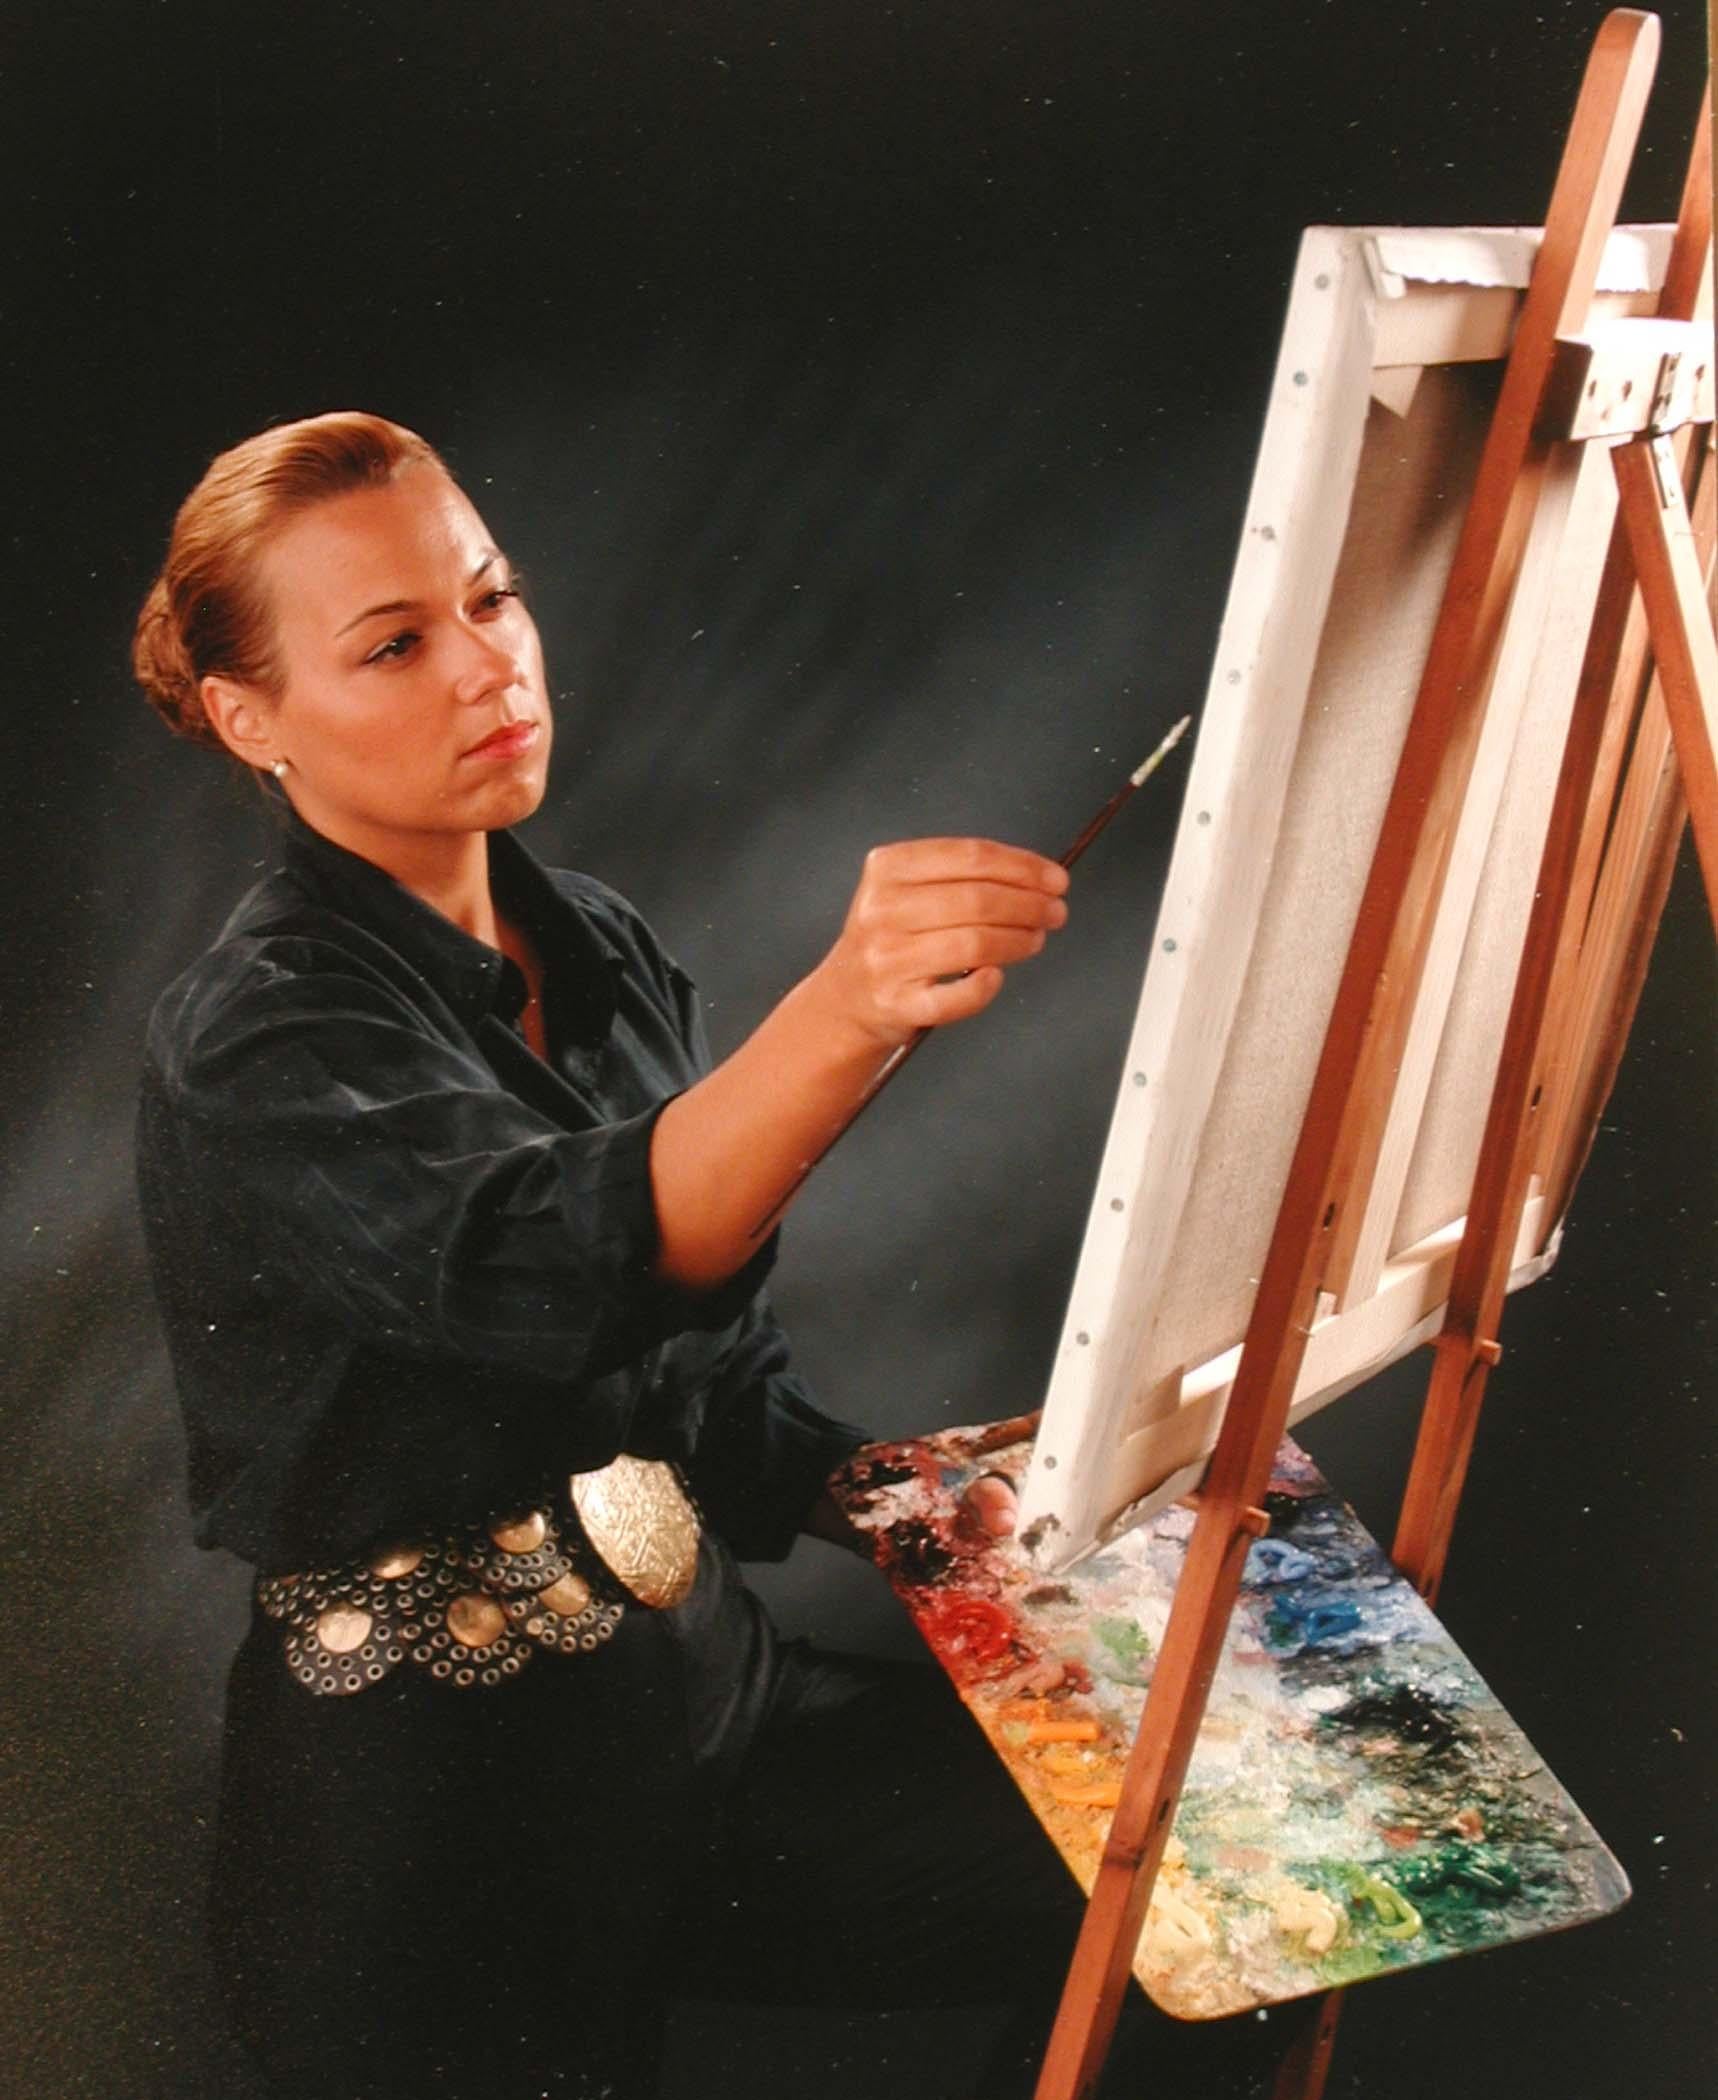 Mutter und Tochter von Lélia Pissarro (geb. 1963)
Öl und Blattgold auf Leinwand 
100 x 100 cm (39 ³/₈ x 39 ³/₈ Zoll)
Signiert unten rechts Lélia Pissarro. 
Ausgeführt im Jahr 2020

Dieses Werk wird von einem Echtheitszertifikat des Künstlers